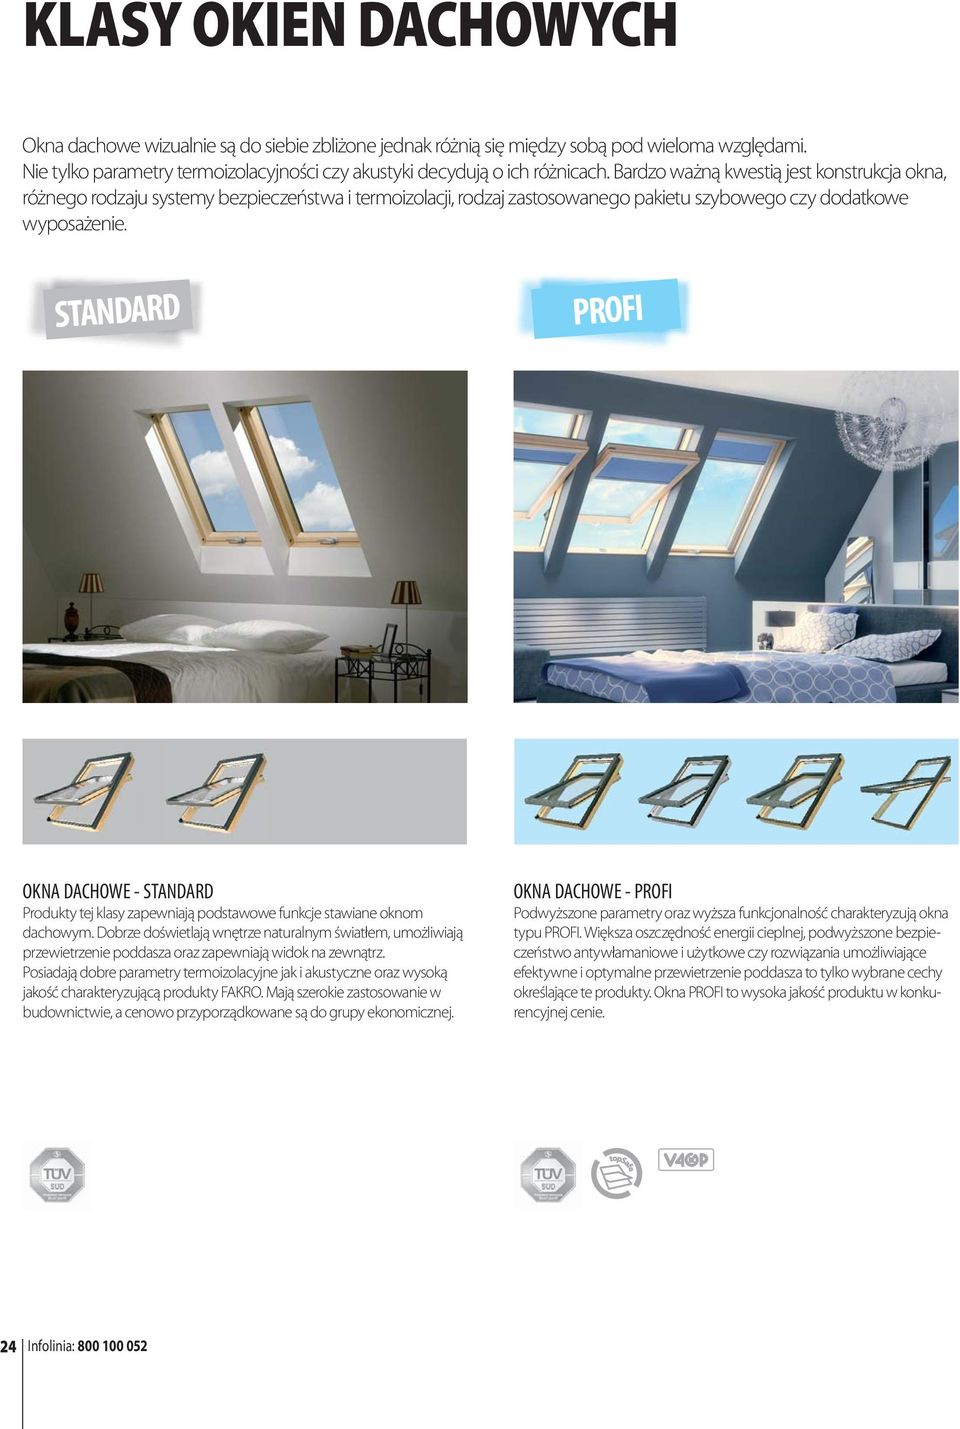 STANDARD PROFI OKNA DACHOWE - STANDARD Produkty tej klasy zapewniają podstawowe funkcje stawiane oknom dachowym.